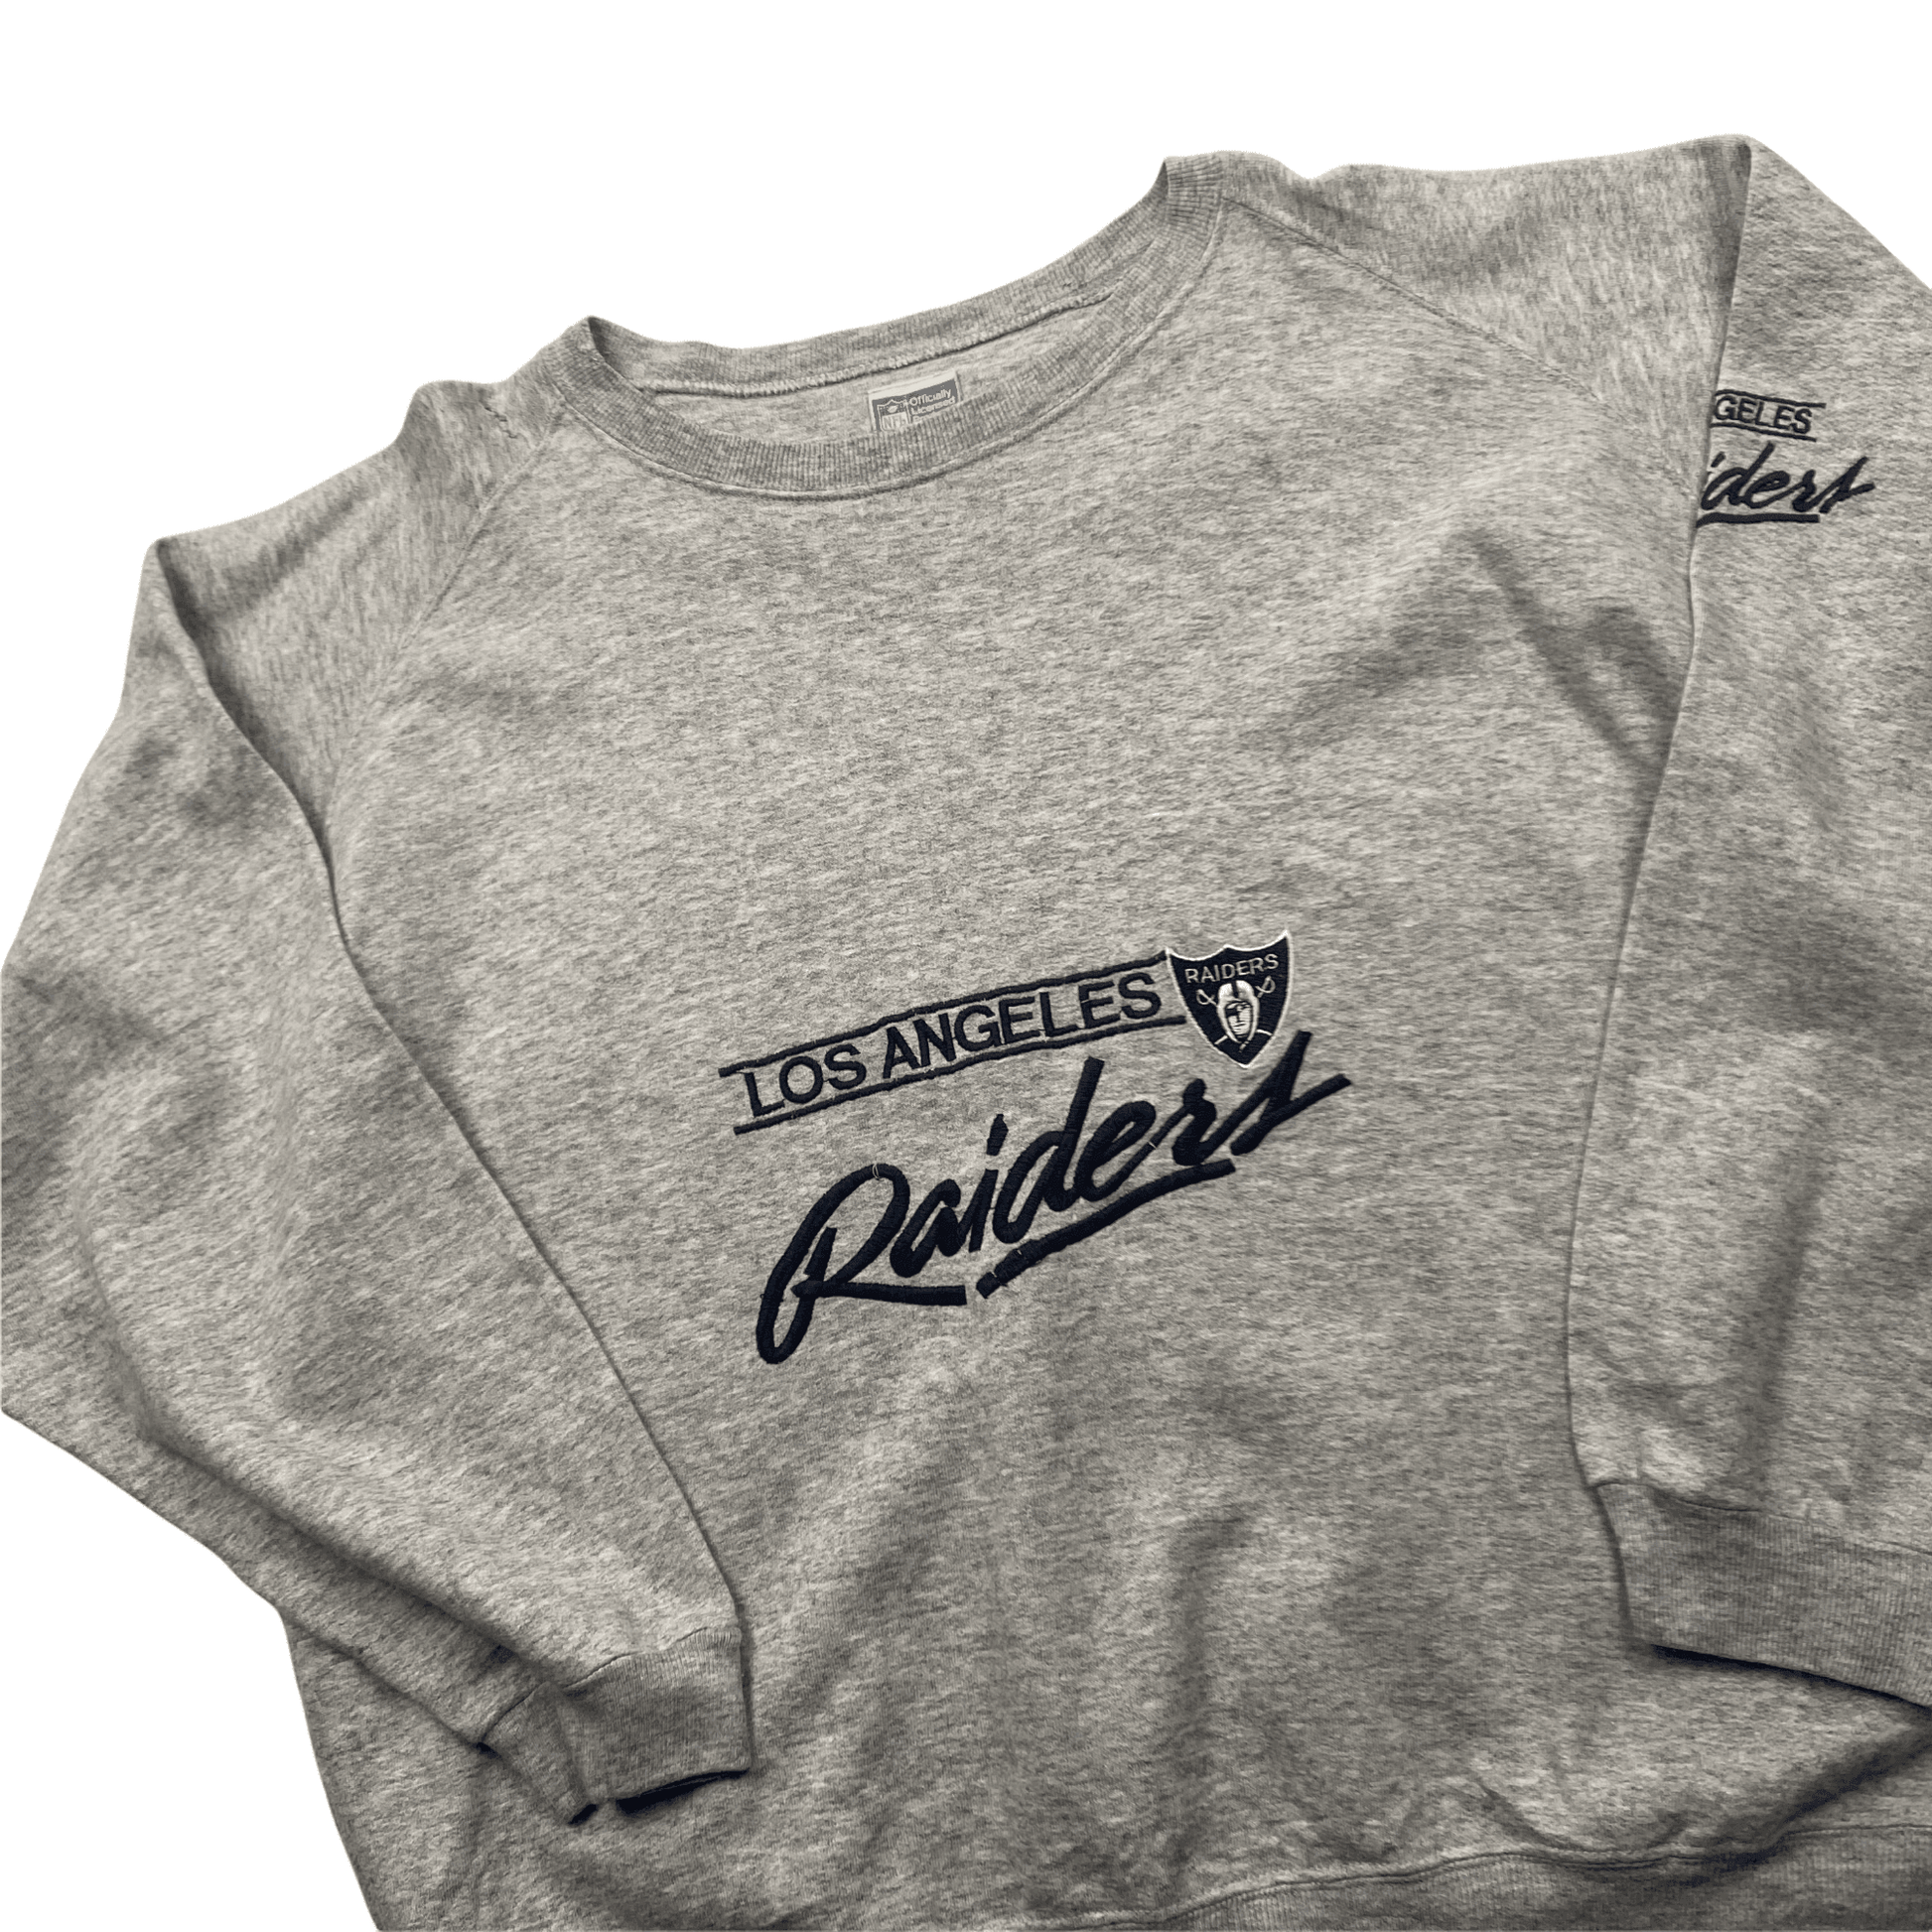 Vintage 90s Grey NFL Los Angeles Raiders Spell-Out Sweatshirt - Medium - The Streetwear Studio